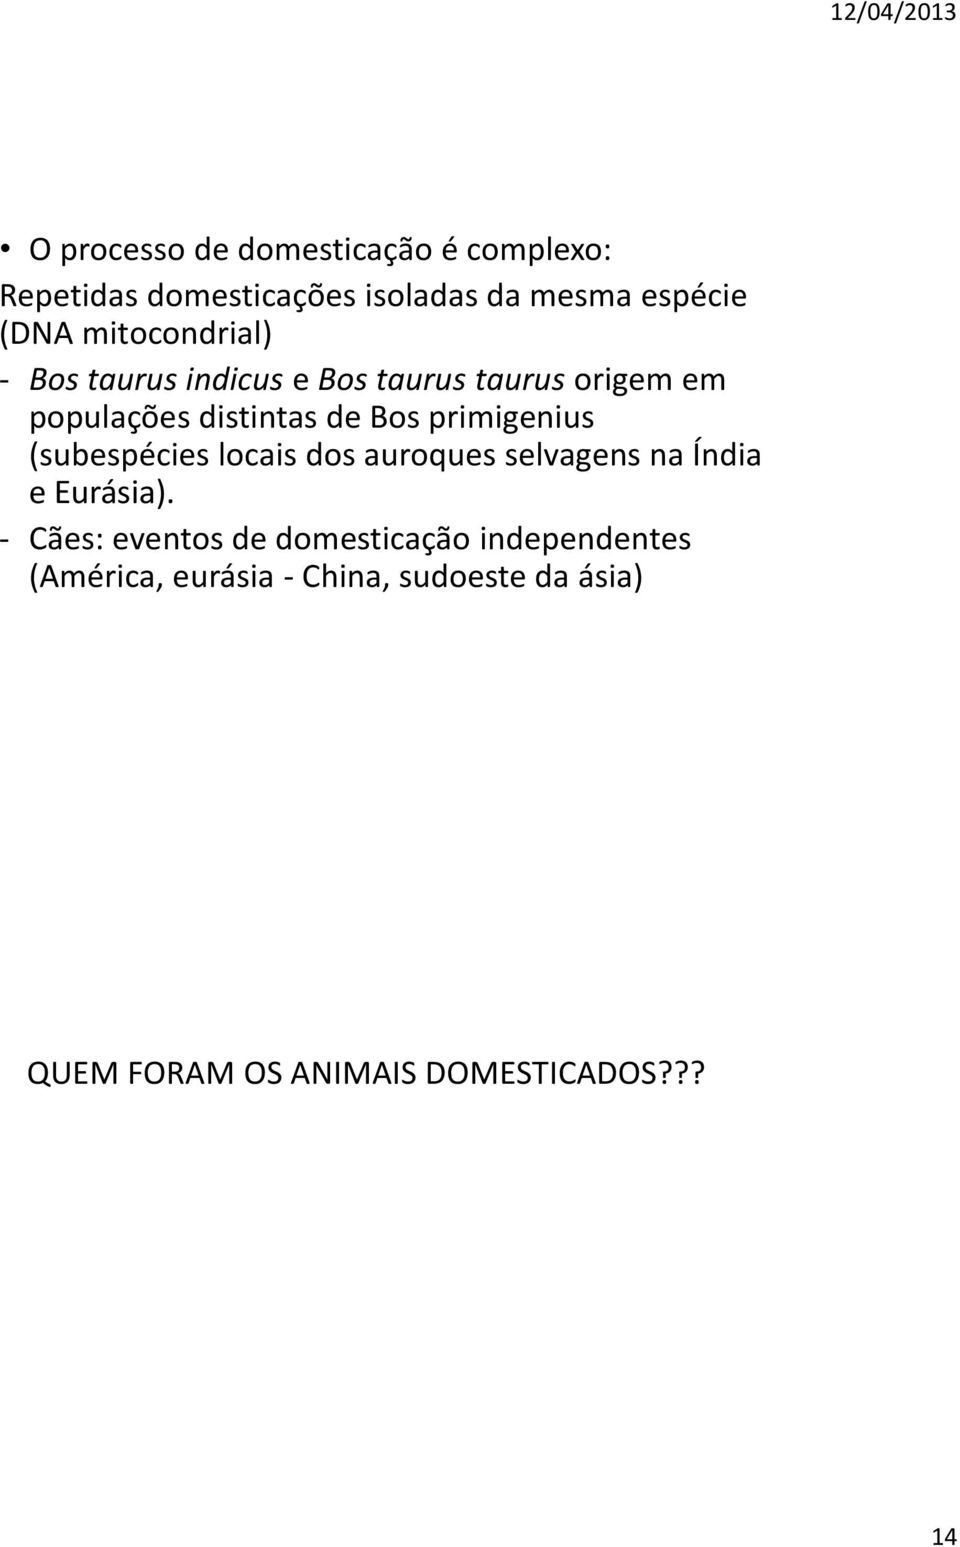 primigenius (subespécies locais dos auroques selvagens na Índia e Eurásia).